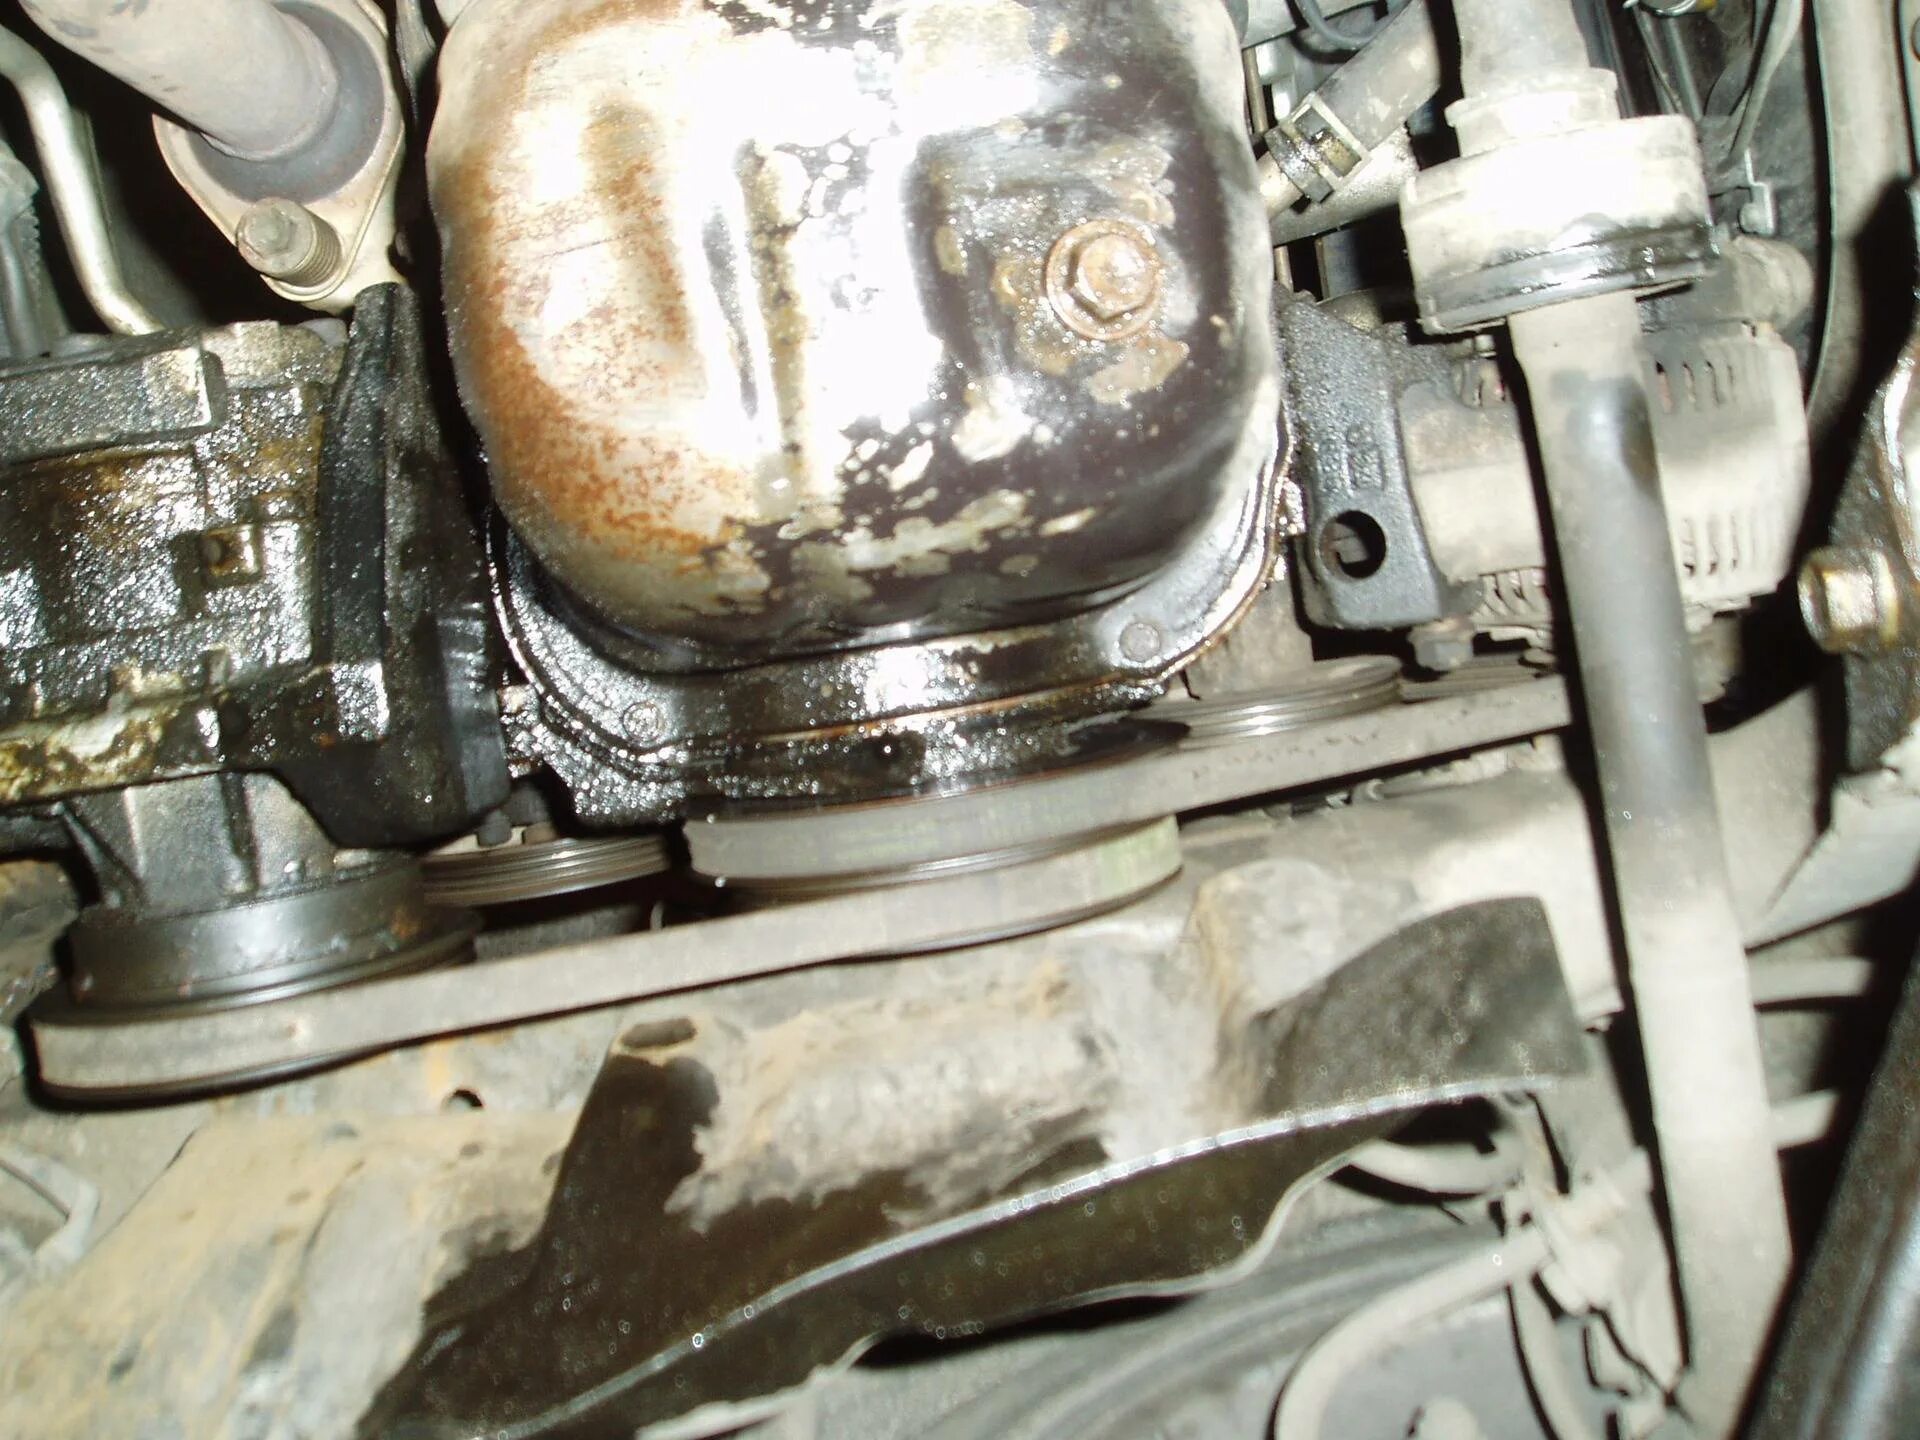 Подтекает масло из двигателя. Течет масло спереди двигателя Портер 2. ГАЗ 24 течь масла снизу. Вытекает масло из двигателя ВАЗ 2114. Подтеки масла.